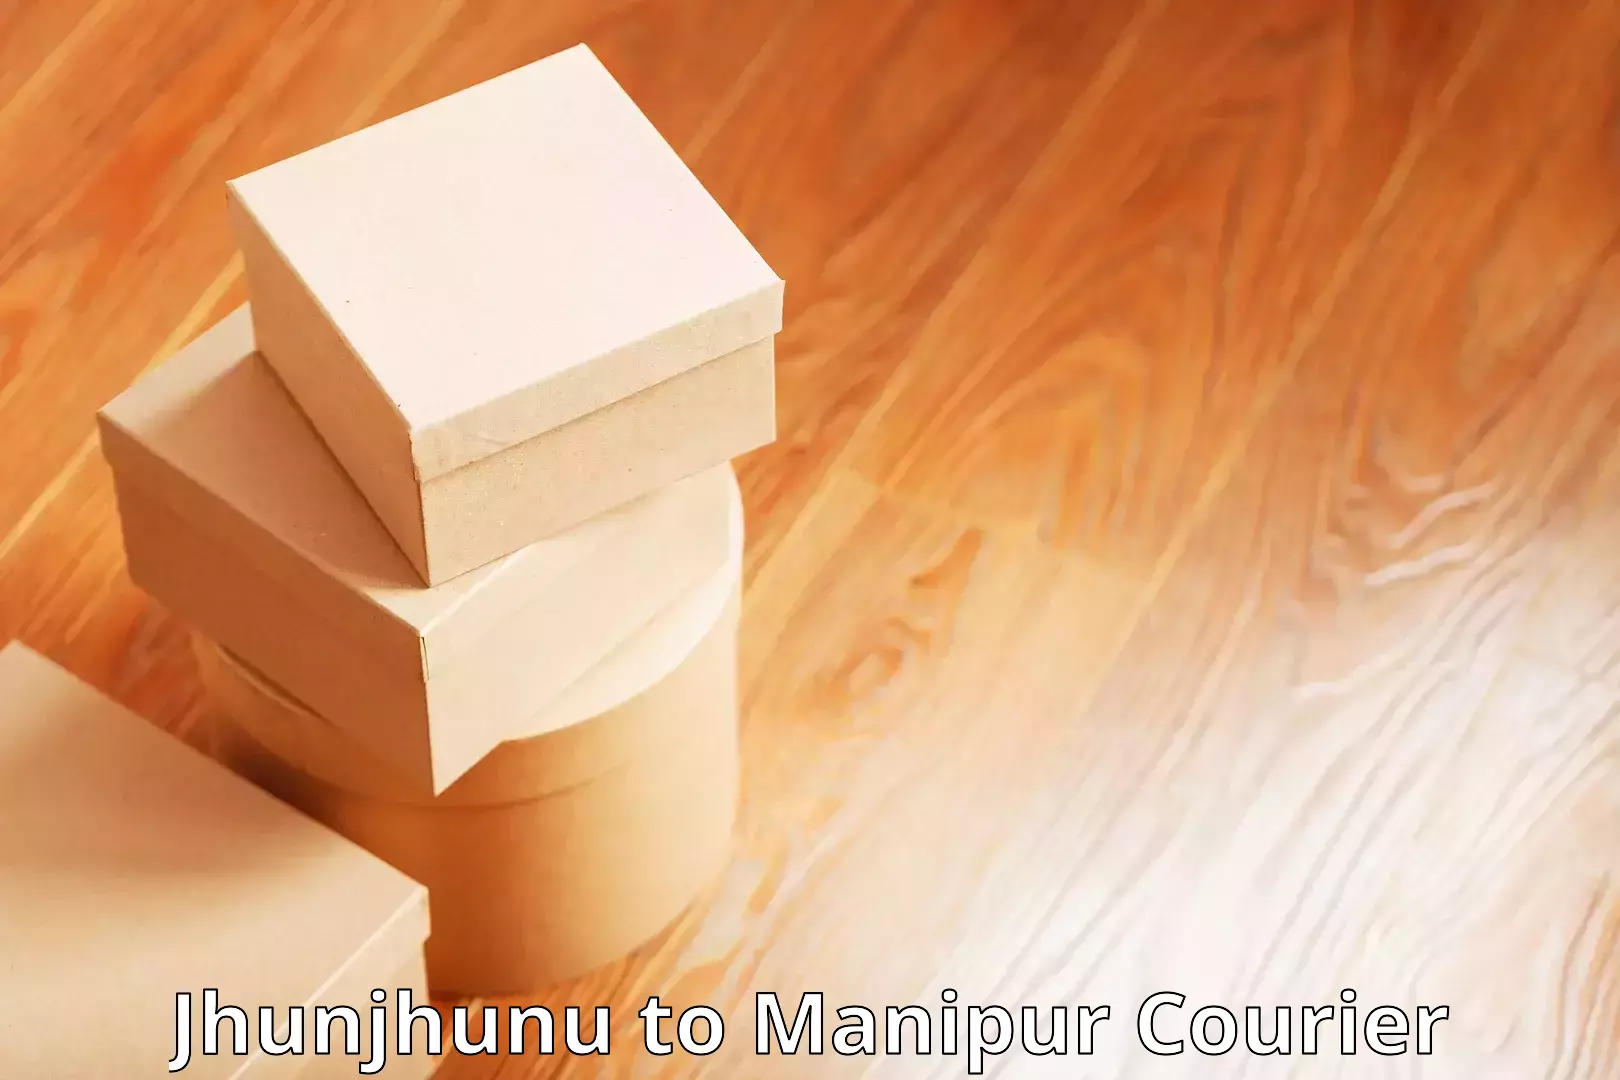 Same-day delivery options Jhunjhunu to Moirang